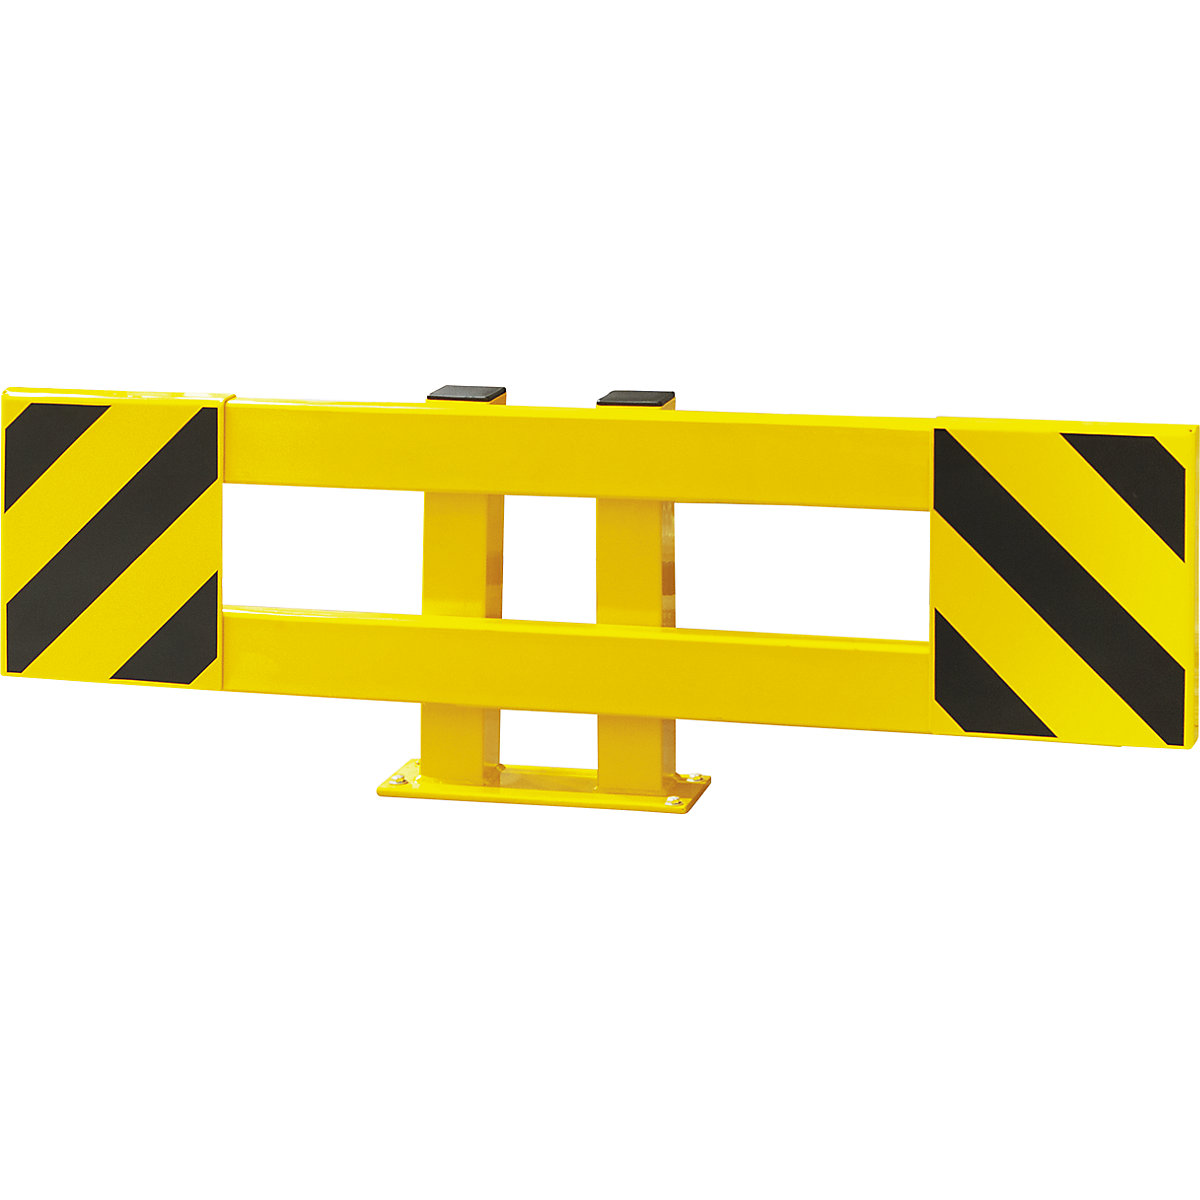 Regalschutz-Planken-Set, für Einfachregal, ausziehbar 900 – 1300 mm, außen